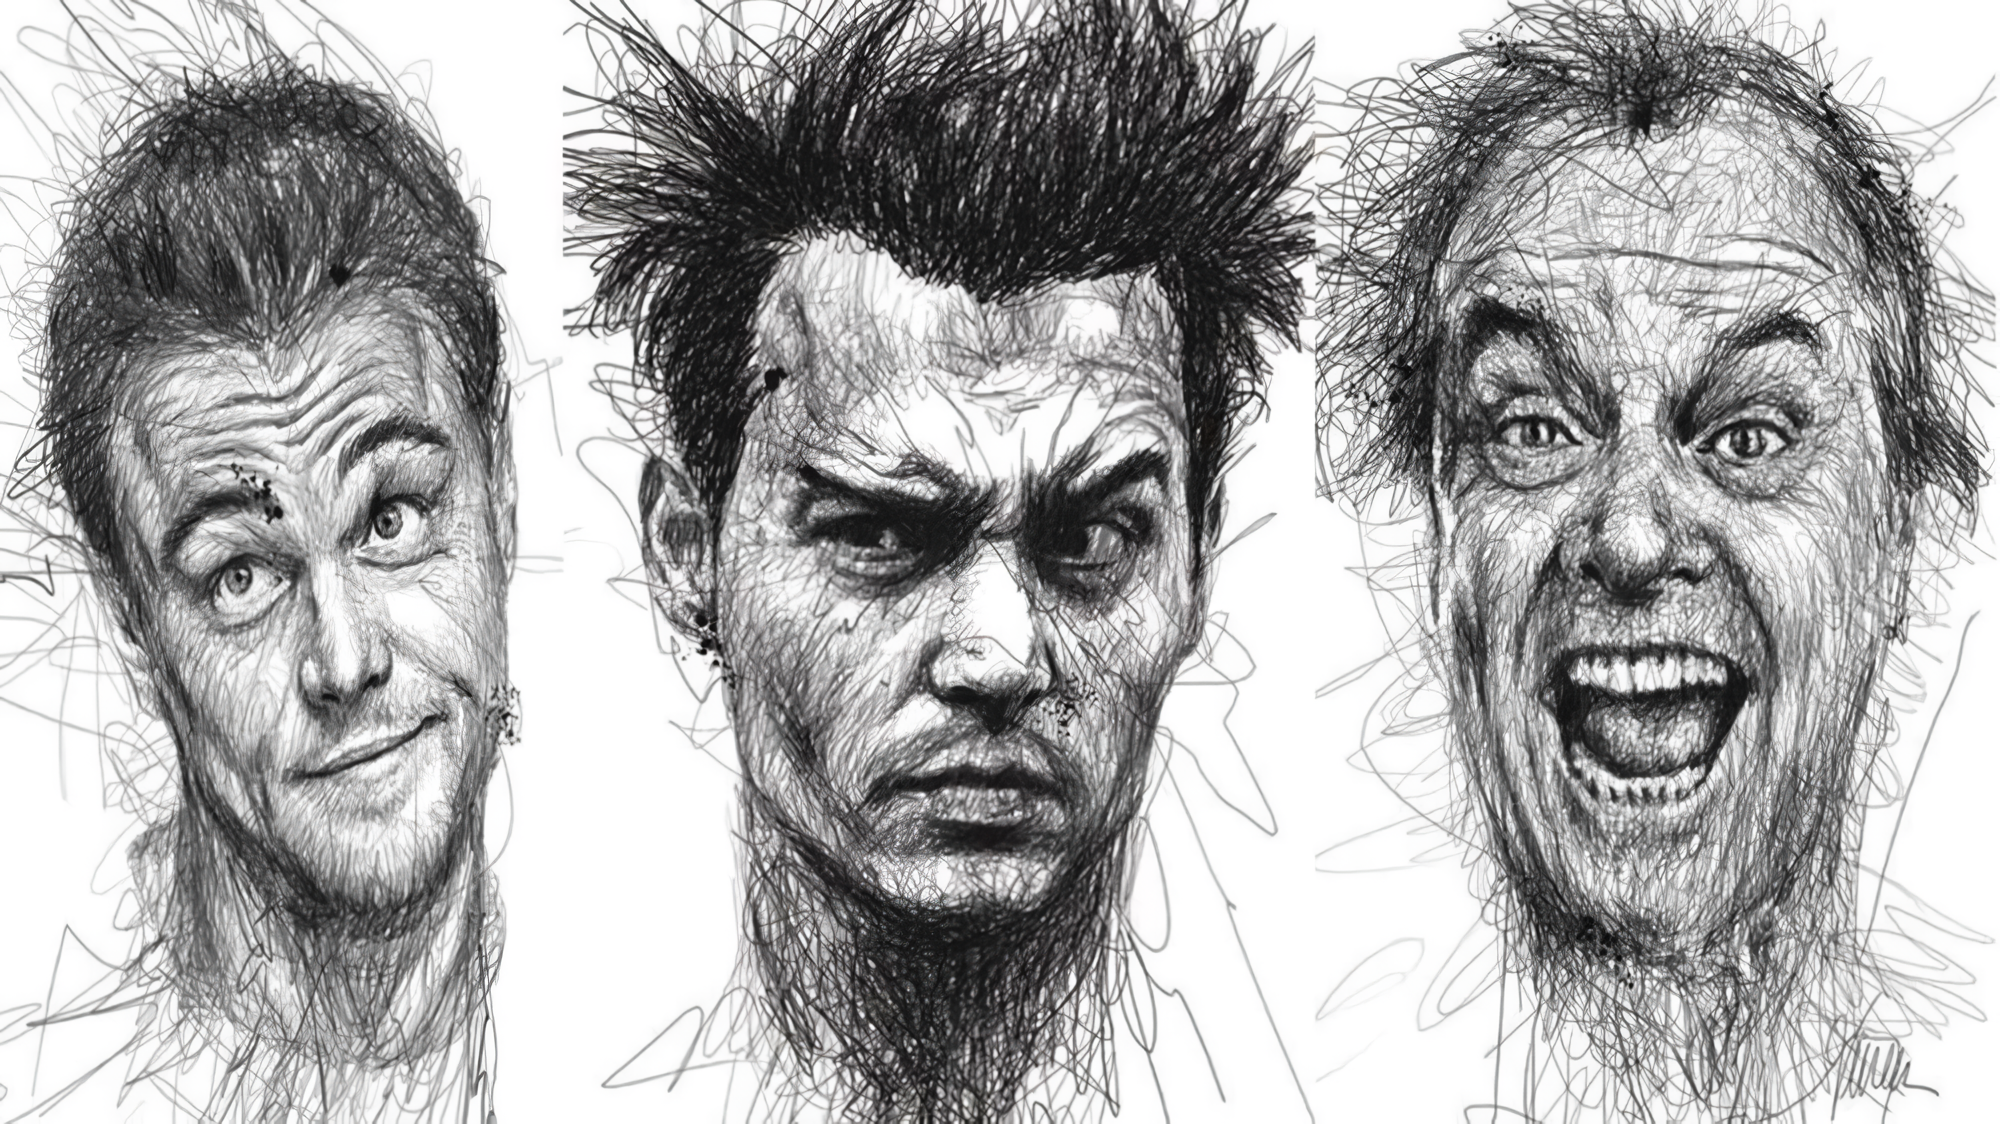 Как нарисовать лицо человека поэтапно для начинающих художников. Пропорции и эмоции